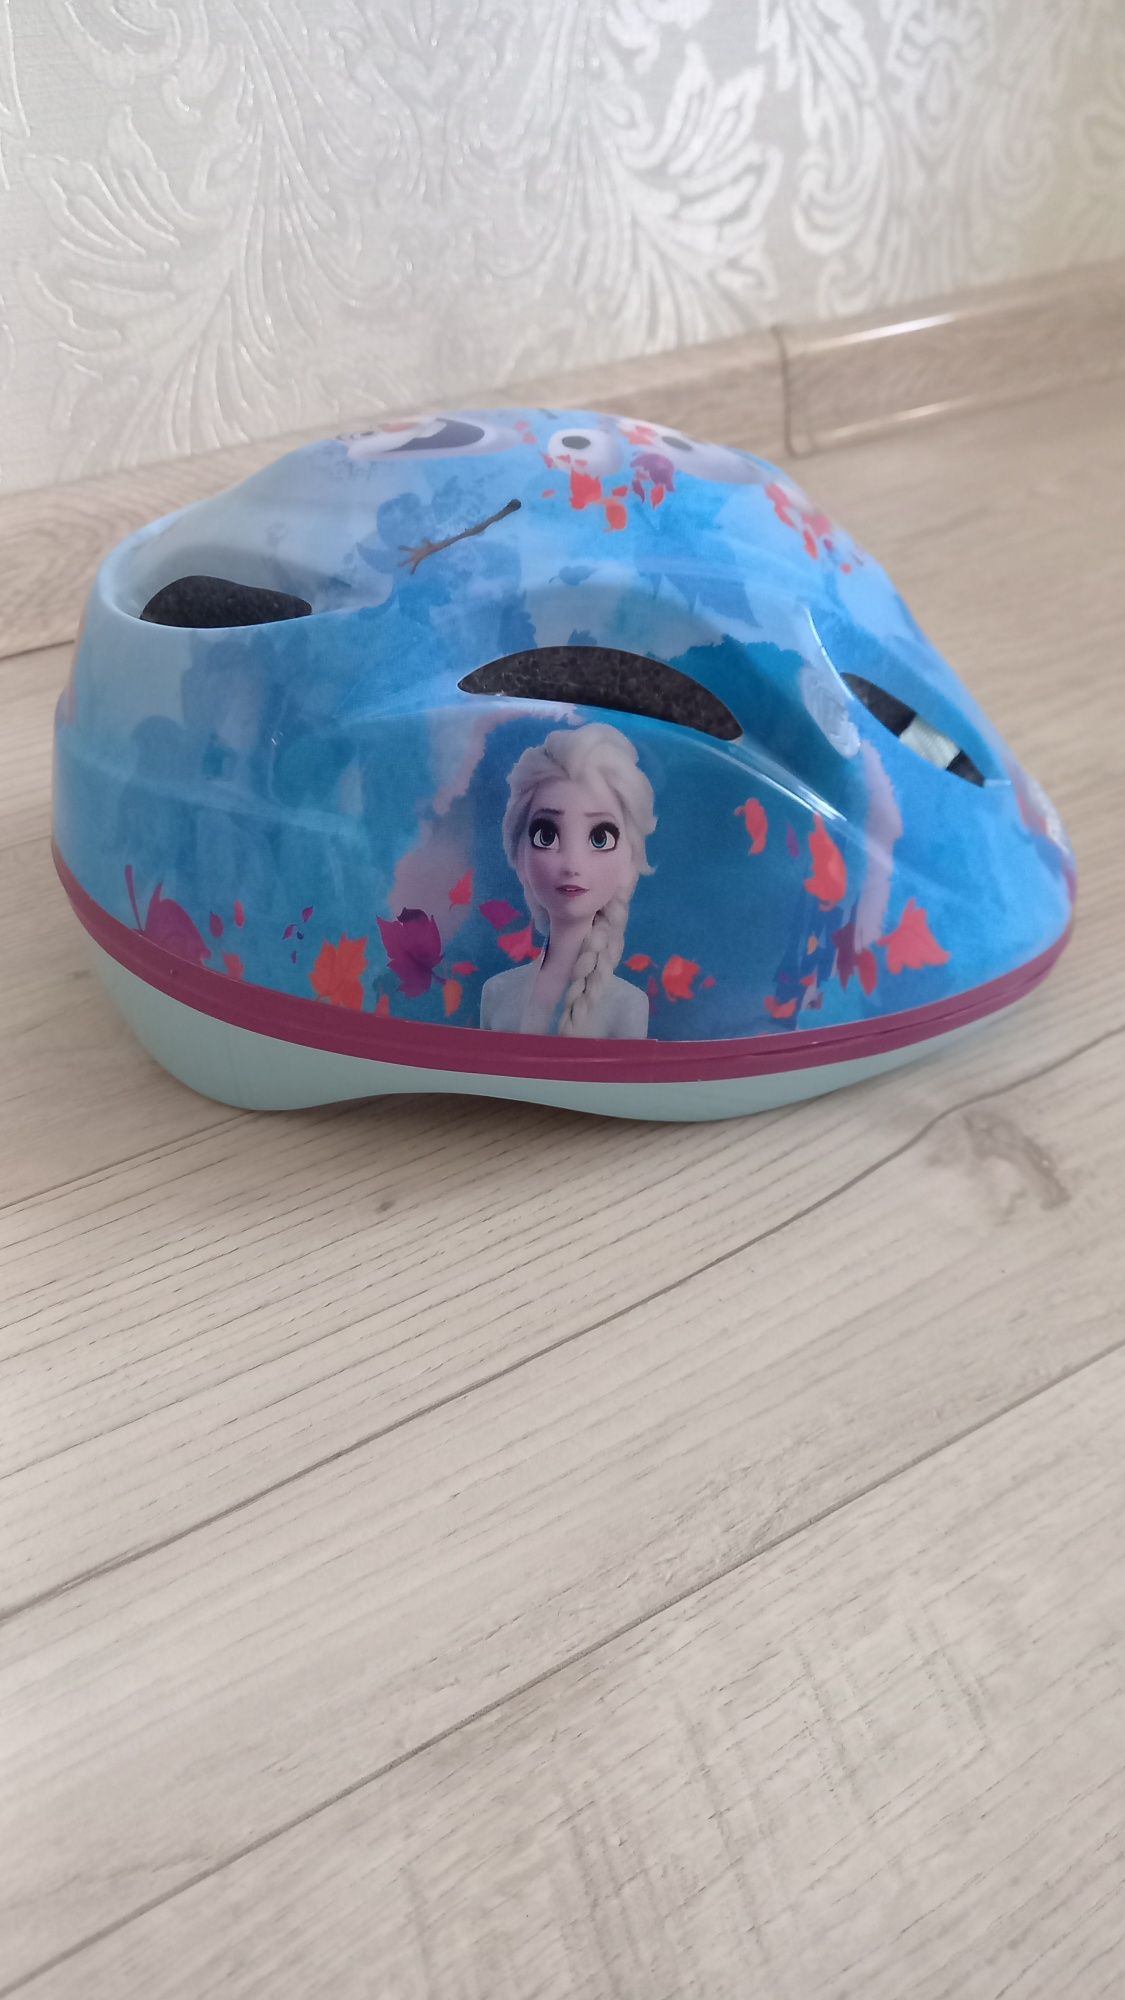 Продам детский велосипедный шлем Frozen 2